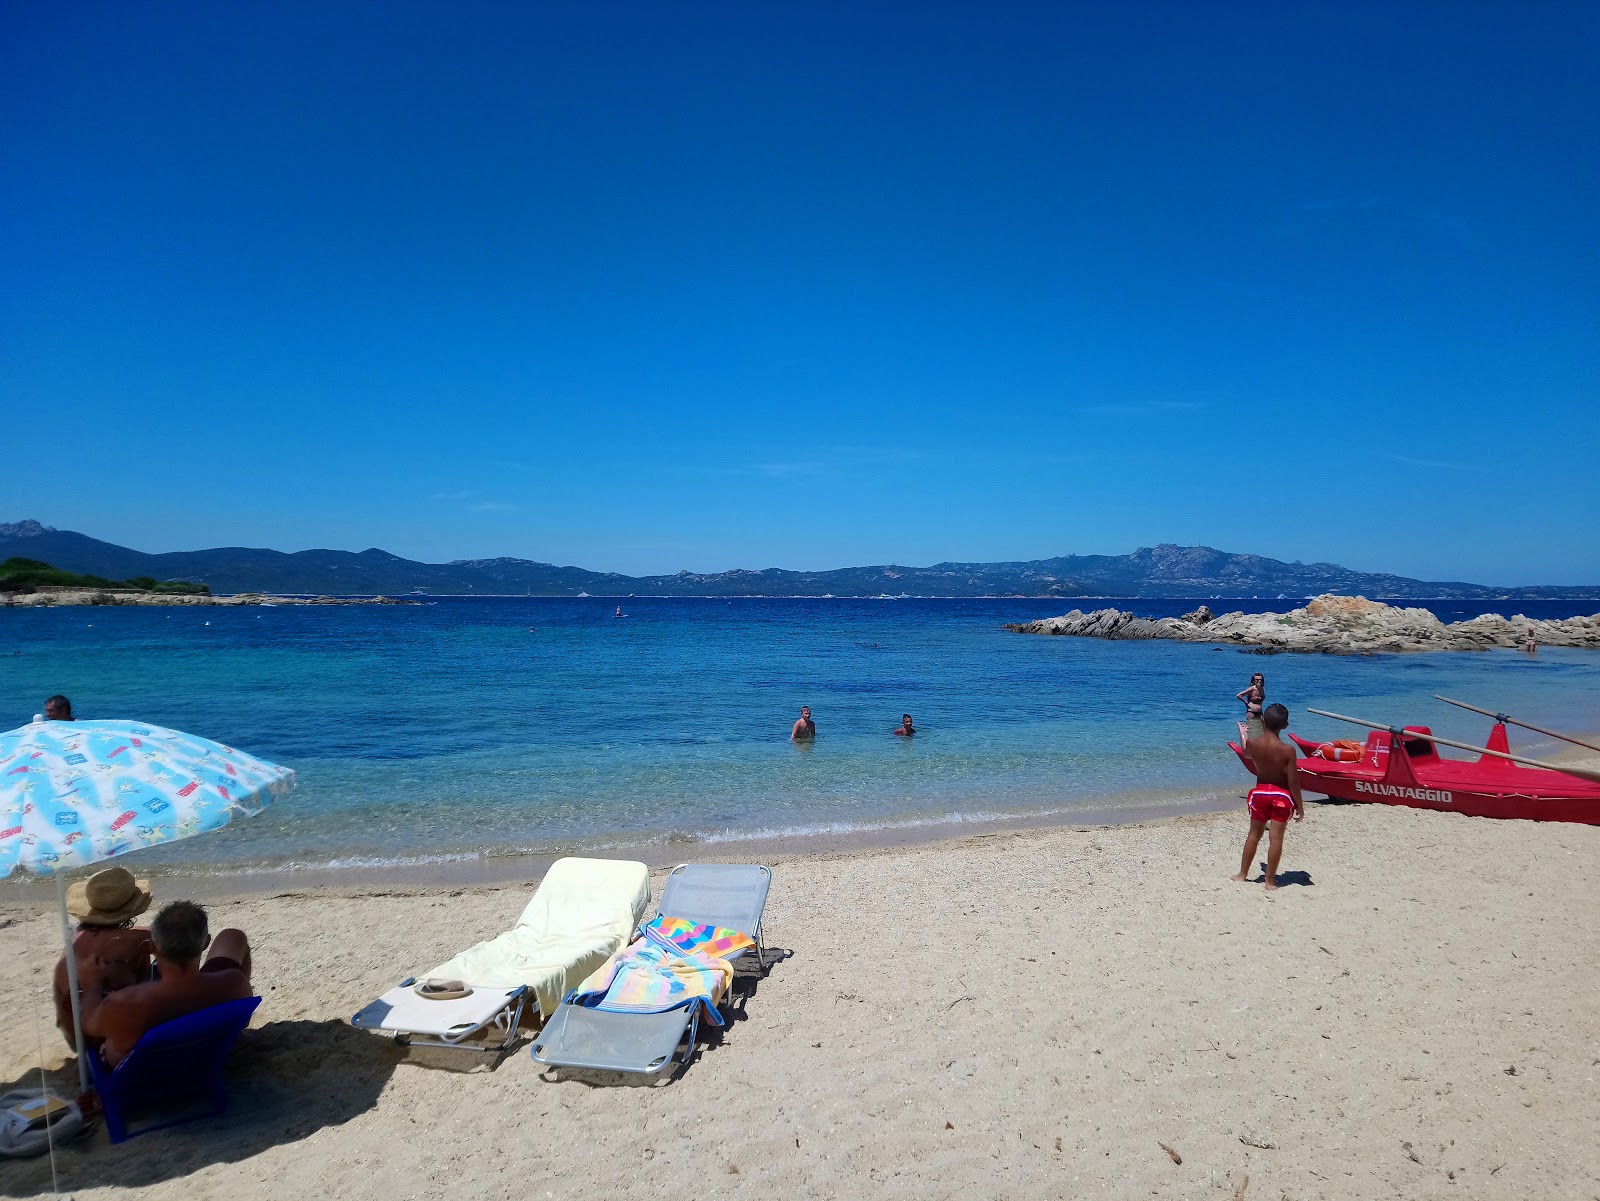 Spiaggia Punta Volpe'in fotoğrafı orta koylar ile birlikte